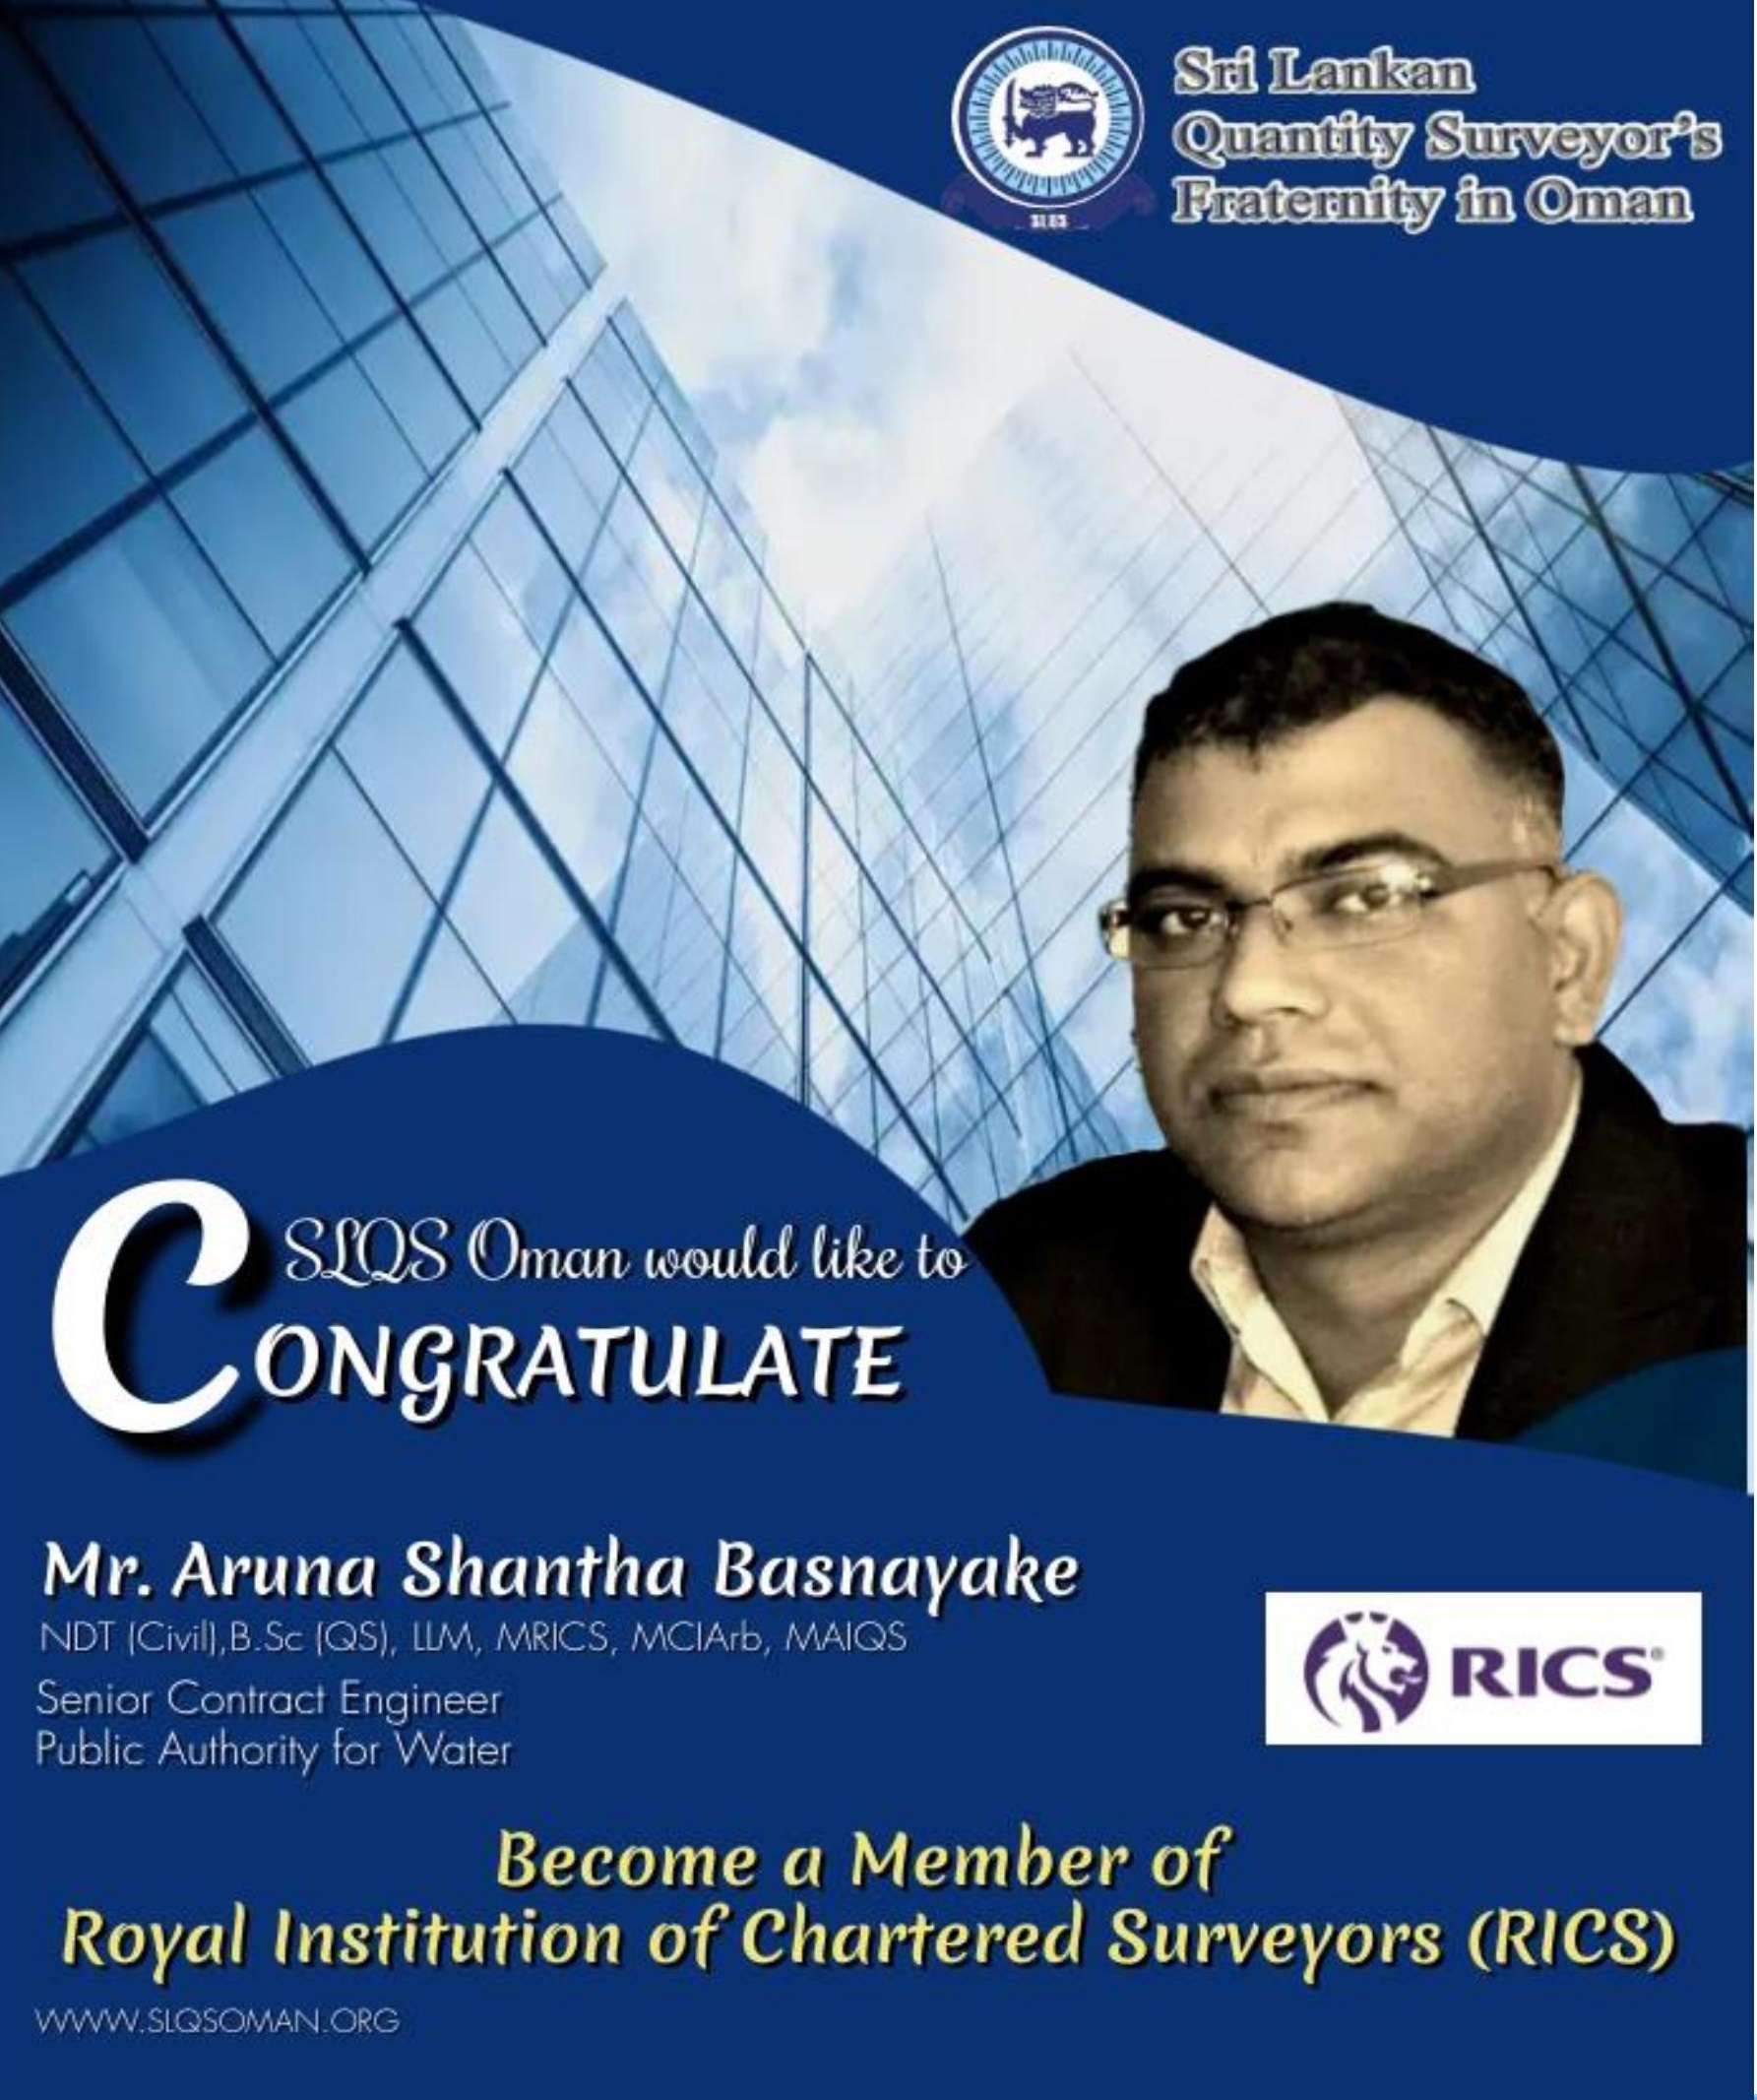 Congratulations!! Mr. Aruna Shantha Basnayake !! For Becoming A Member of RICS